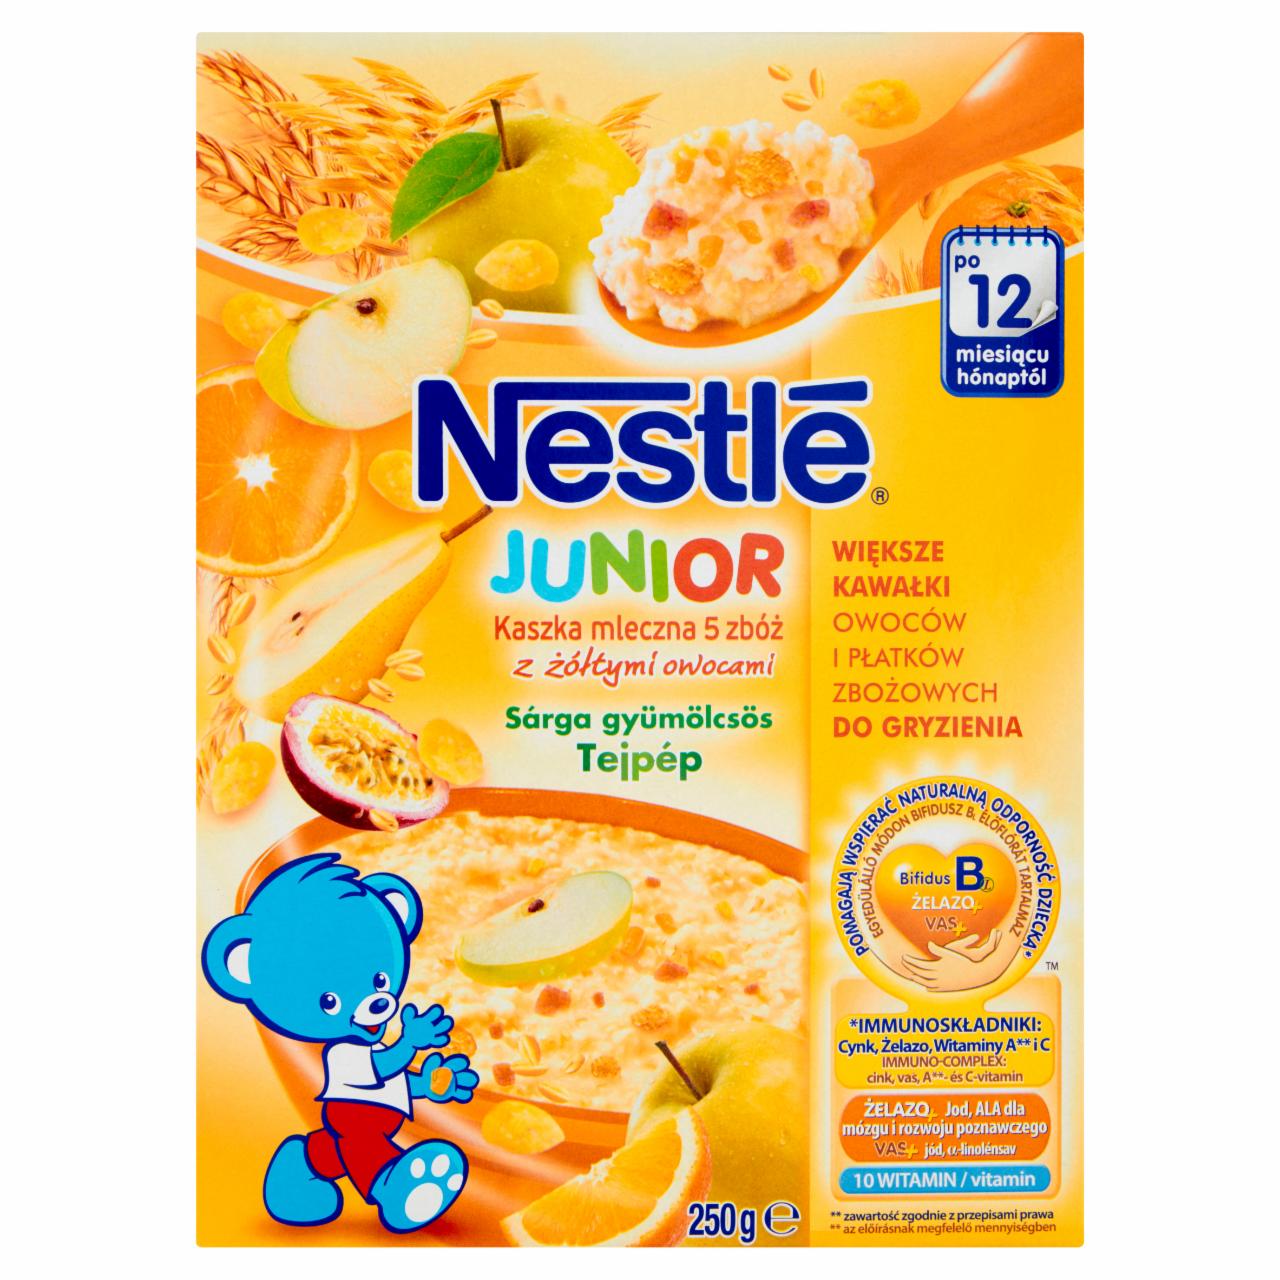 Zdjęcia - Nestlé Junior Kaszka mleczna 5 zbóż z żółtymi owocami po 12 miesiącu 250 g